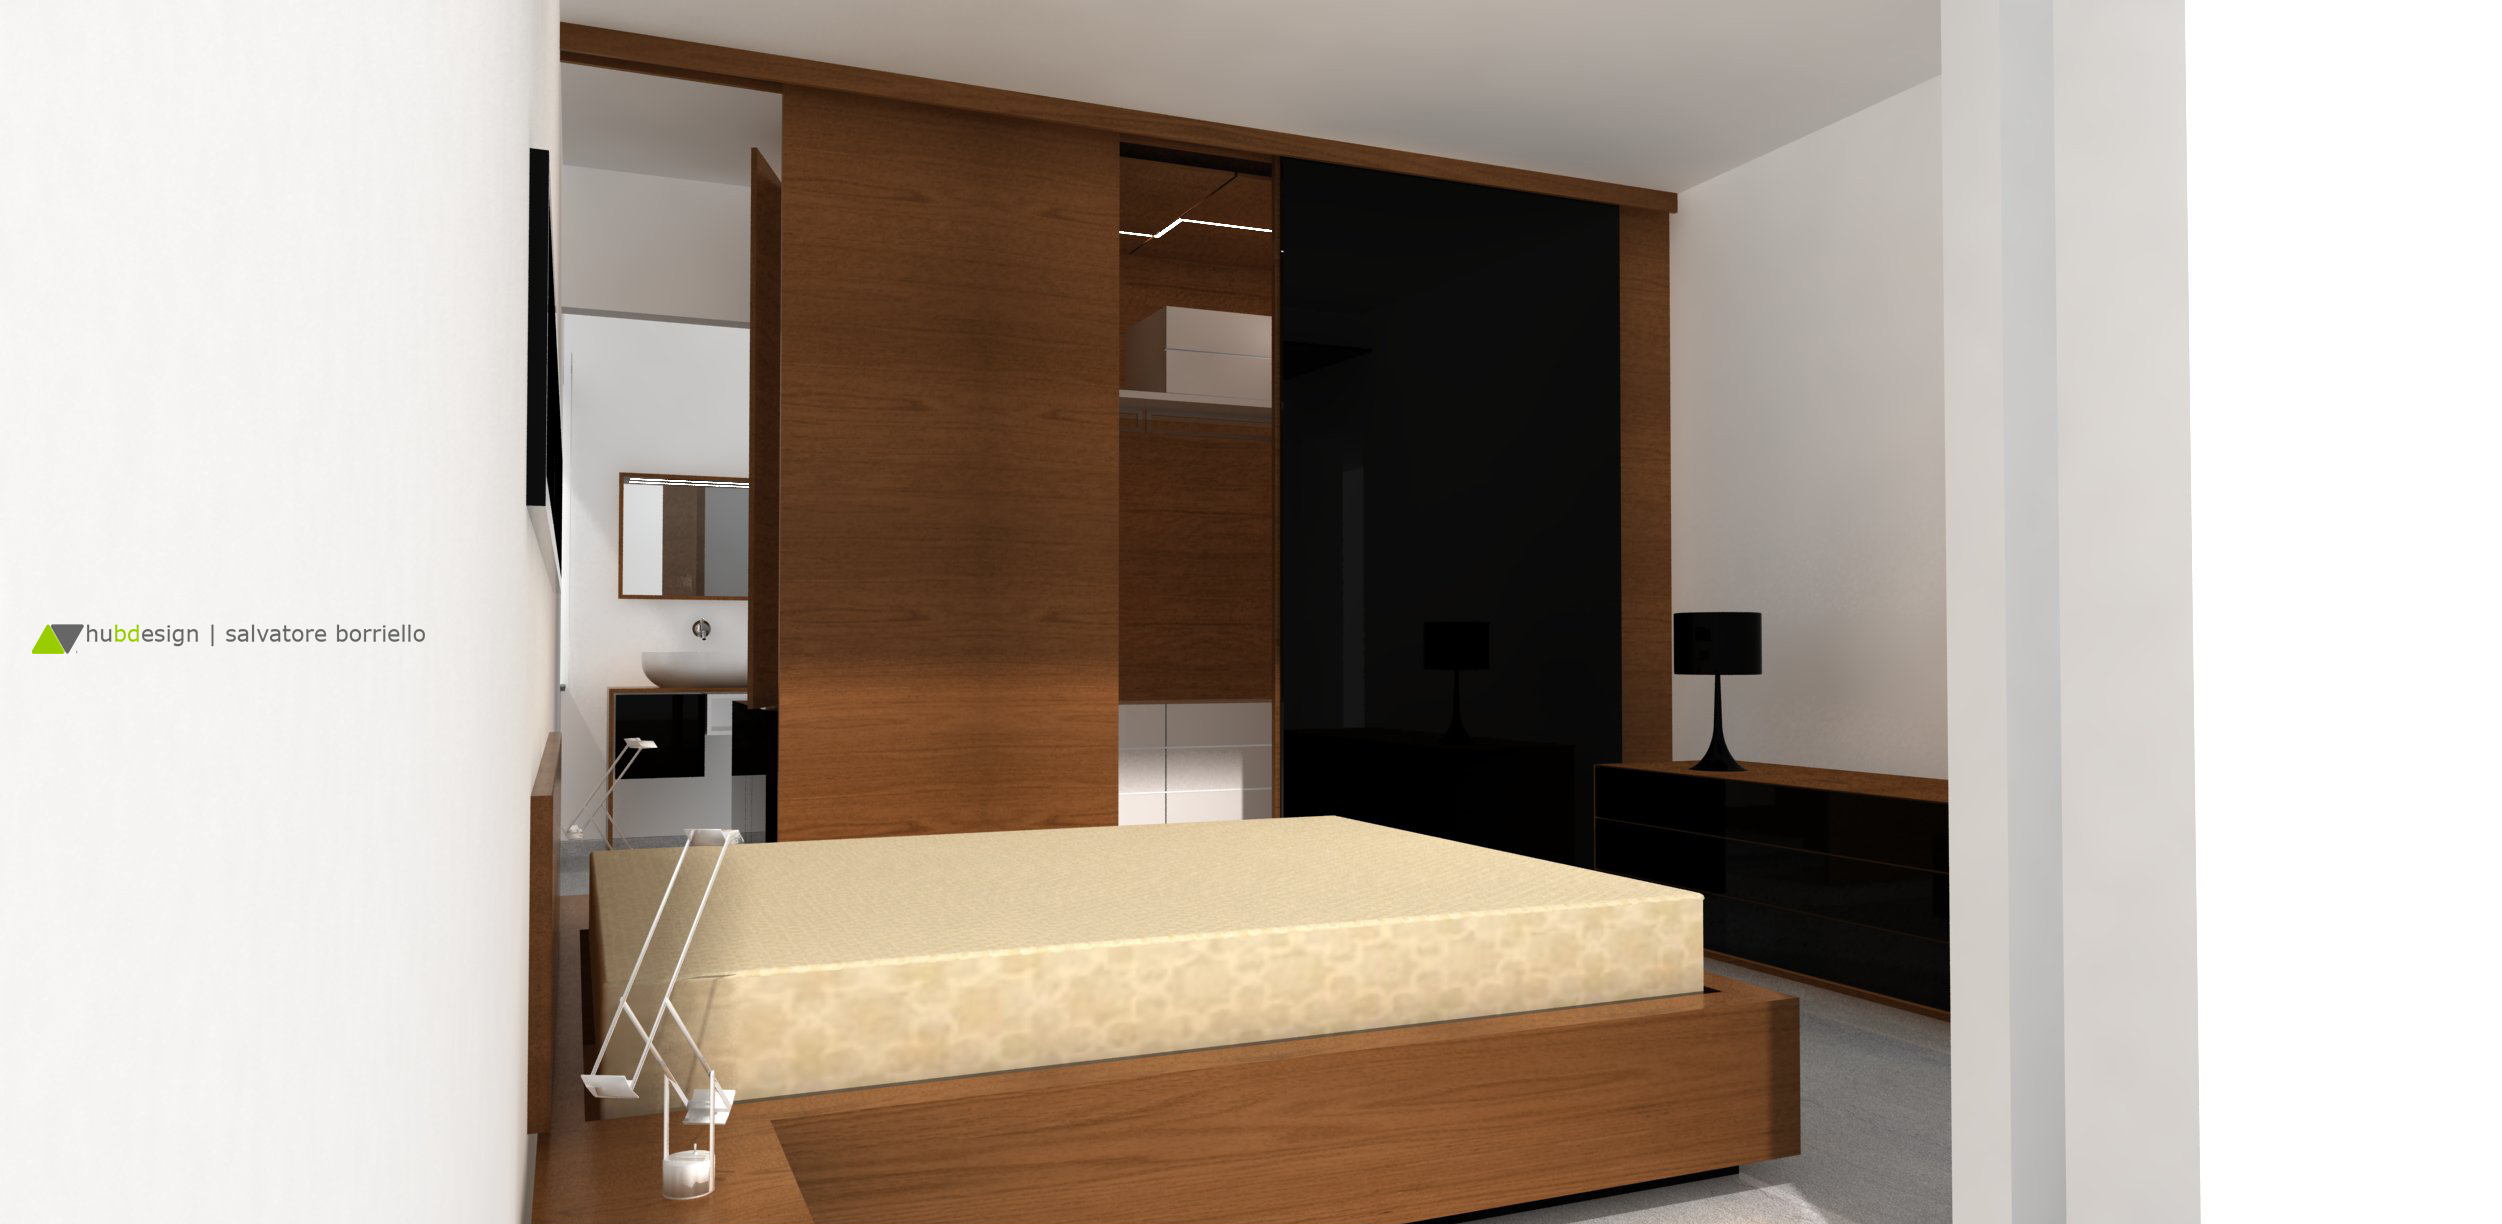 Progetto di interior design per casa spataro for Siti di interior design